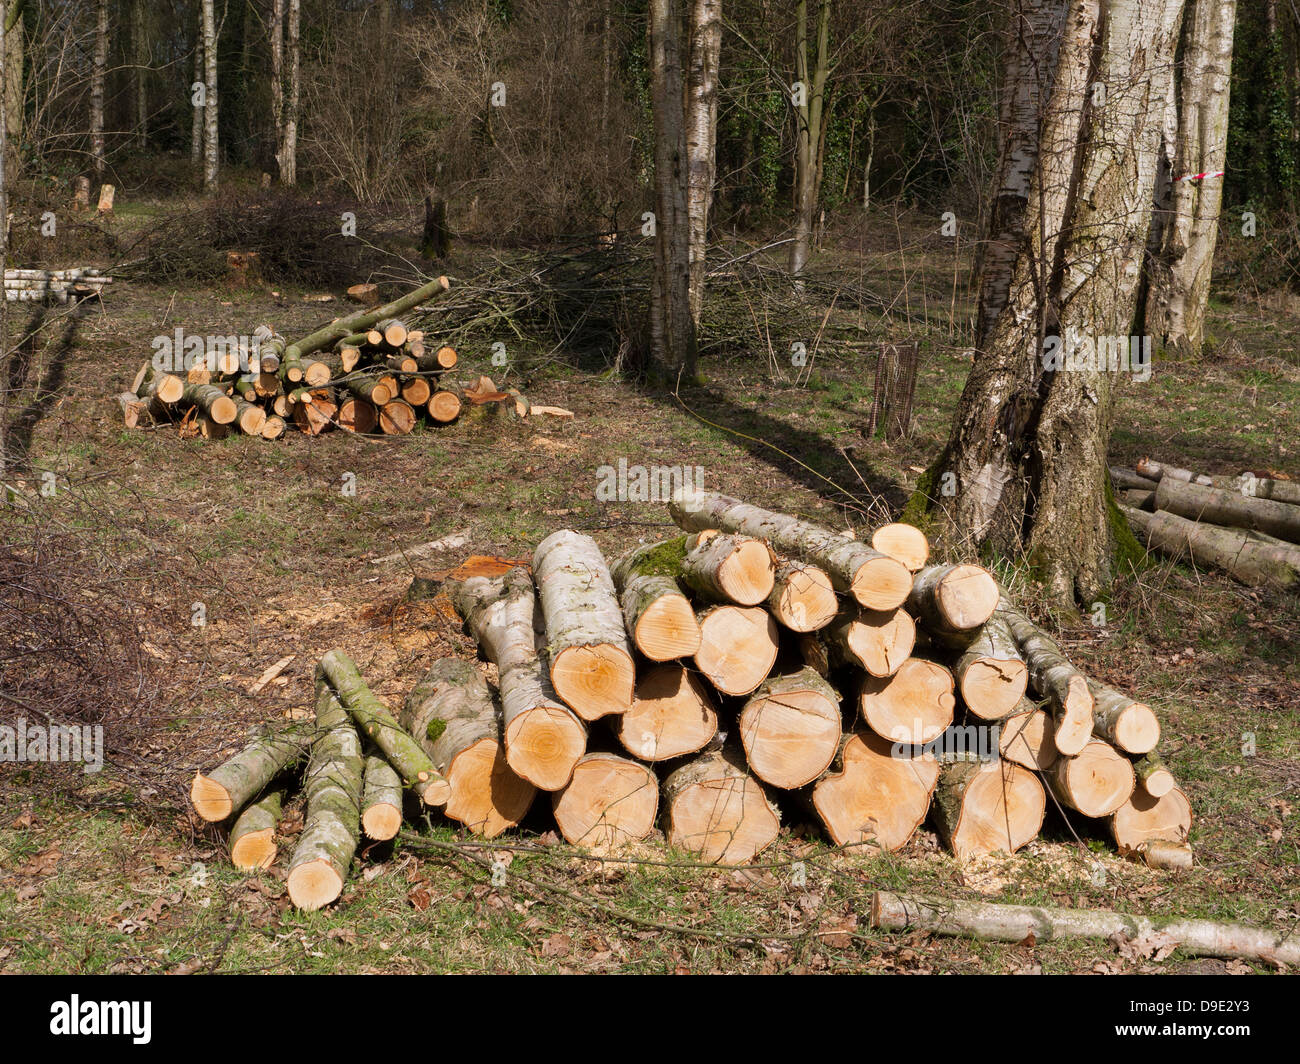 England, Cheshire, Haufen von frisch geschlagenem Holz Stockfoto